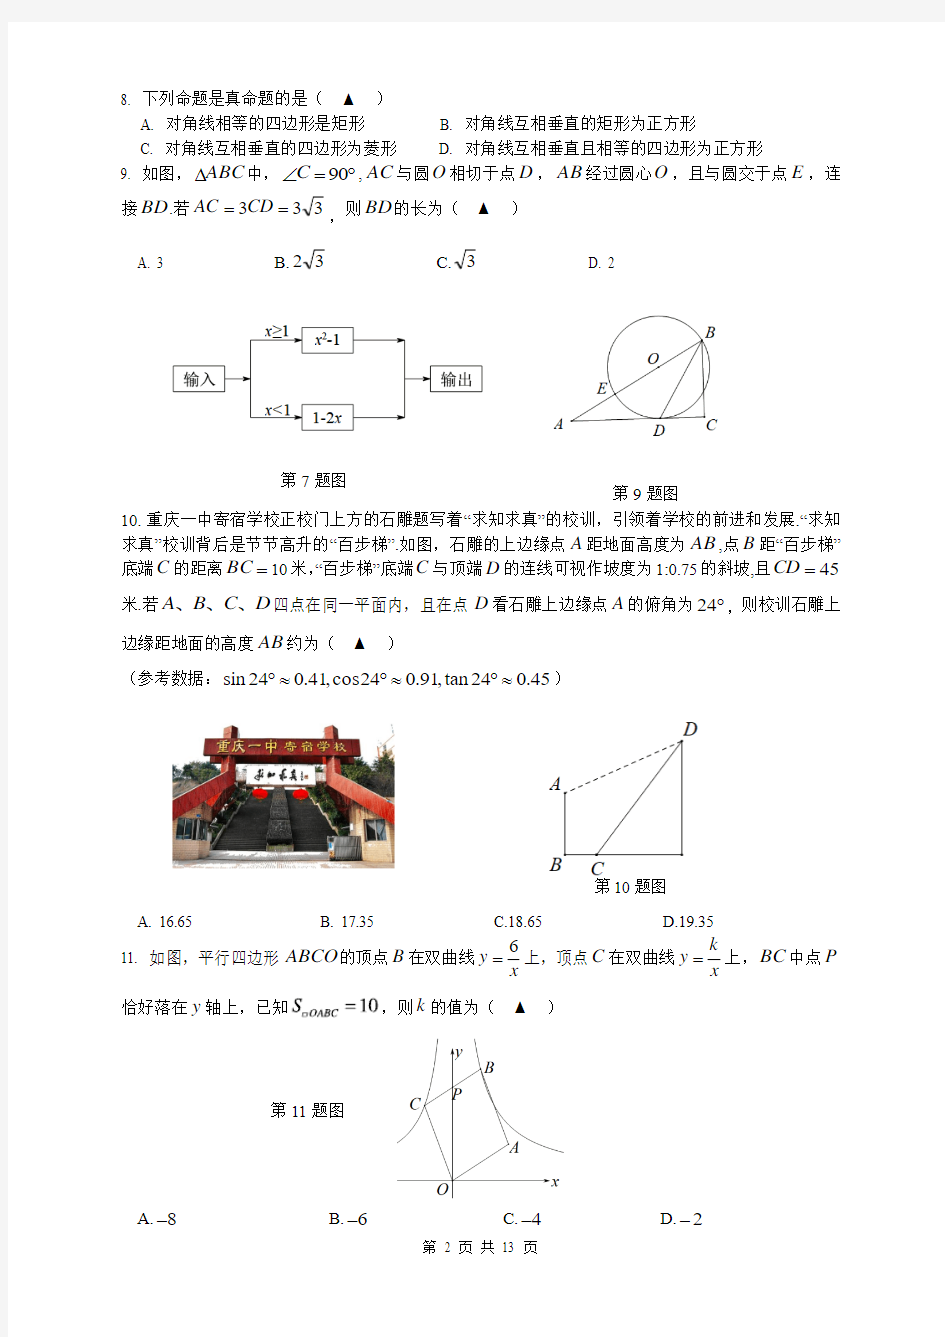 重庆一中初2019级18—19学年度下期半期考试数学试题(含答案)